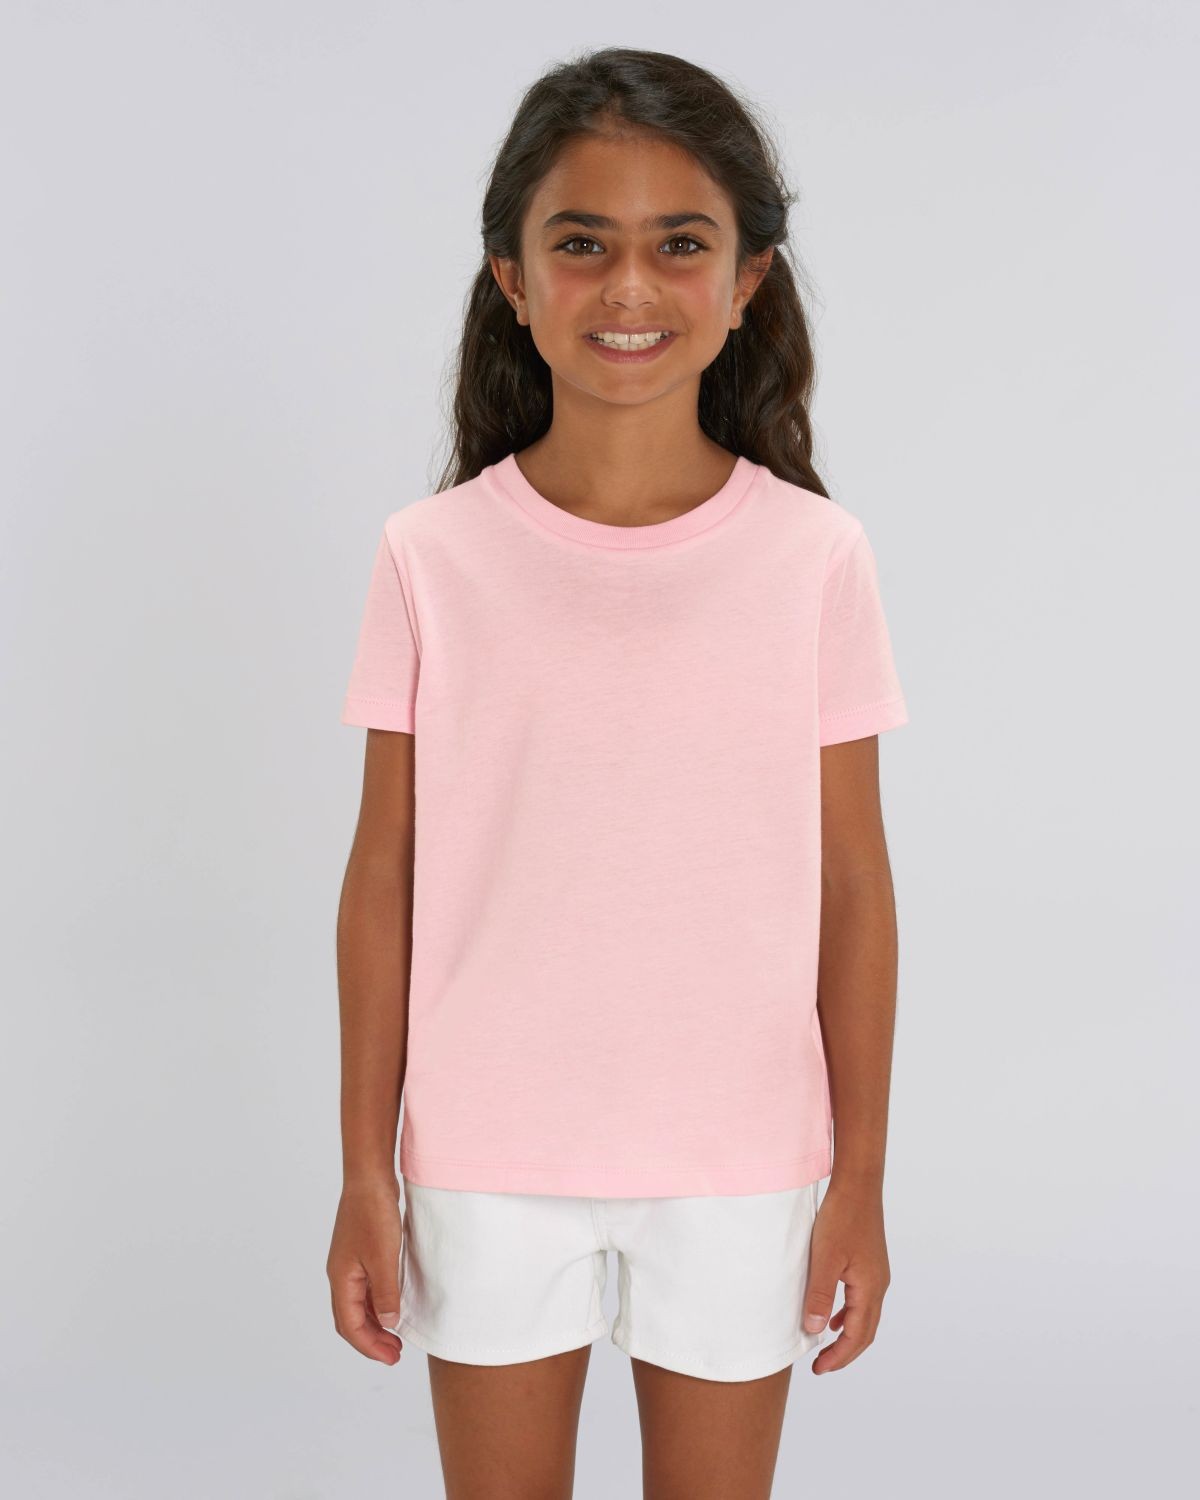 Camiseta niña Rosa Algodón para personalización